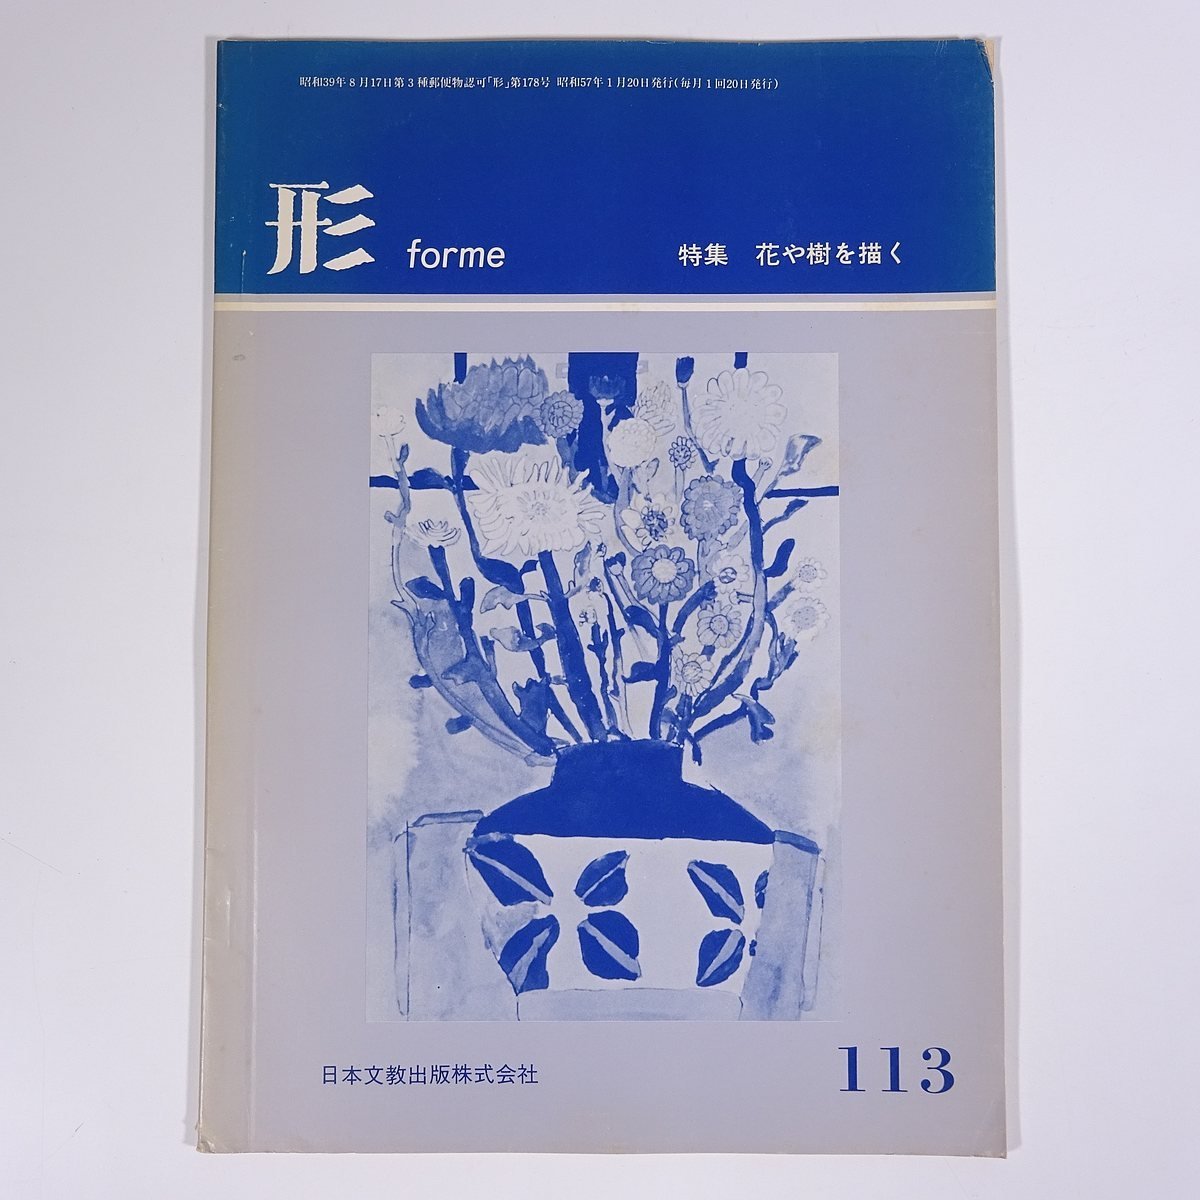 Form Vol.113 1982/1 Nippon Bunkyo Publishing Co., Ltd. Magazin Bildung Kunst Bildende Kunst Malerei Handwerk Handwerk Spezialthema: Blumen und Bäume zeichnen, usw., Zeitschrift, Kunst, Unterhaltung, Allgemeine Kunst